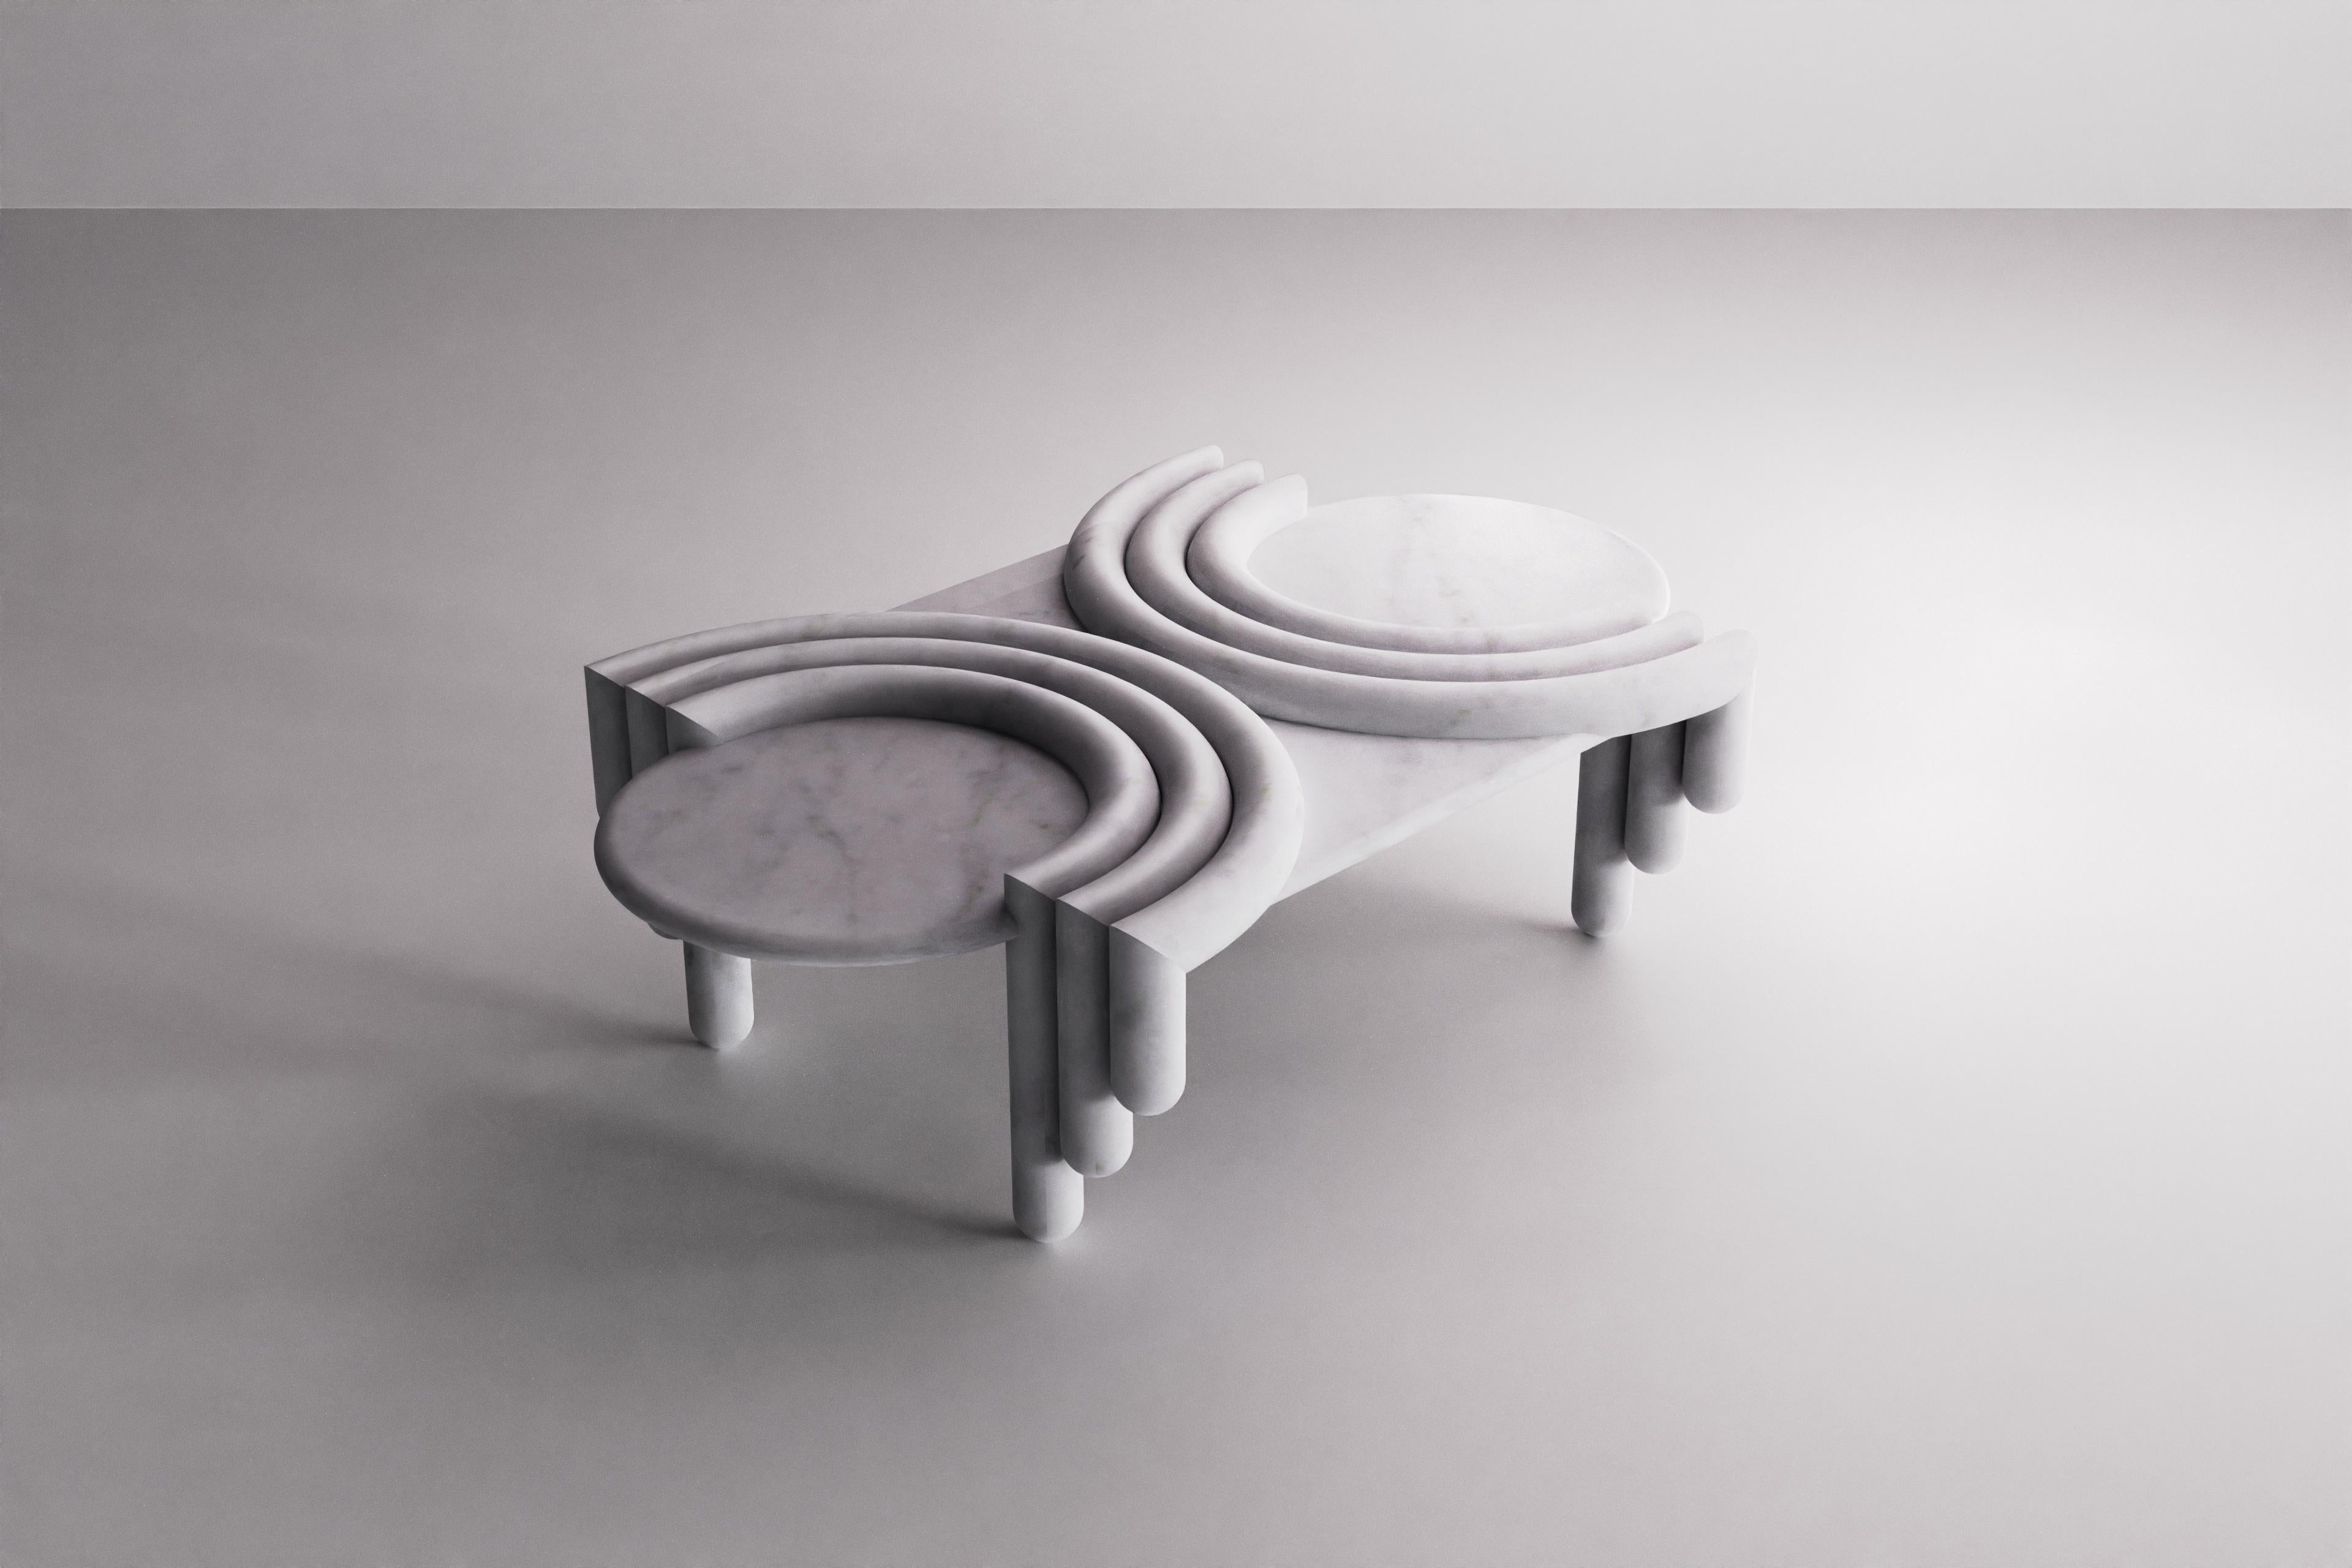 La table basse en marbre Kipferl a pour pieds des bâtons sculpturaux ruisselants qui rappellent des doigts d'éponge. Ceux-ci s'incurvent pour former le plateau de la table, un croissant semi-circulaire composé de trois rangées de profils arrondis